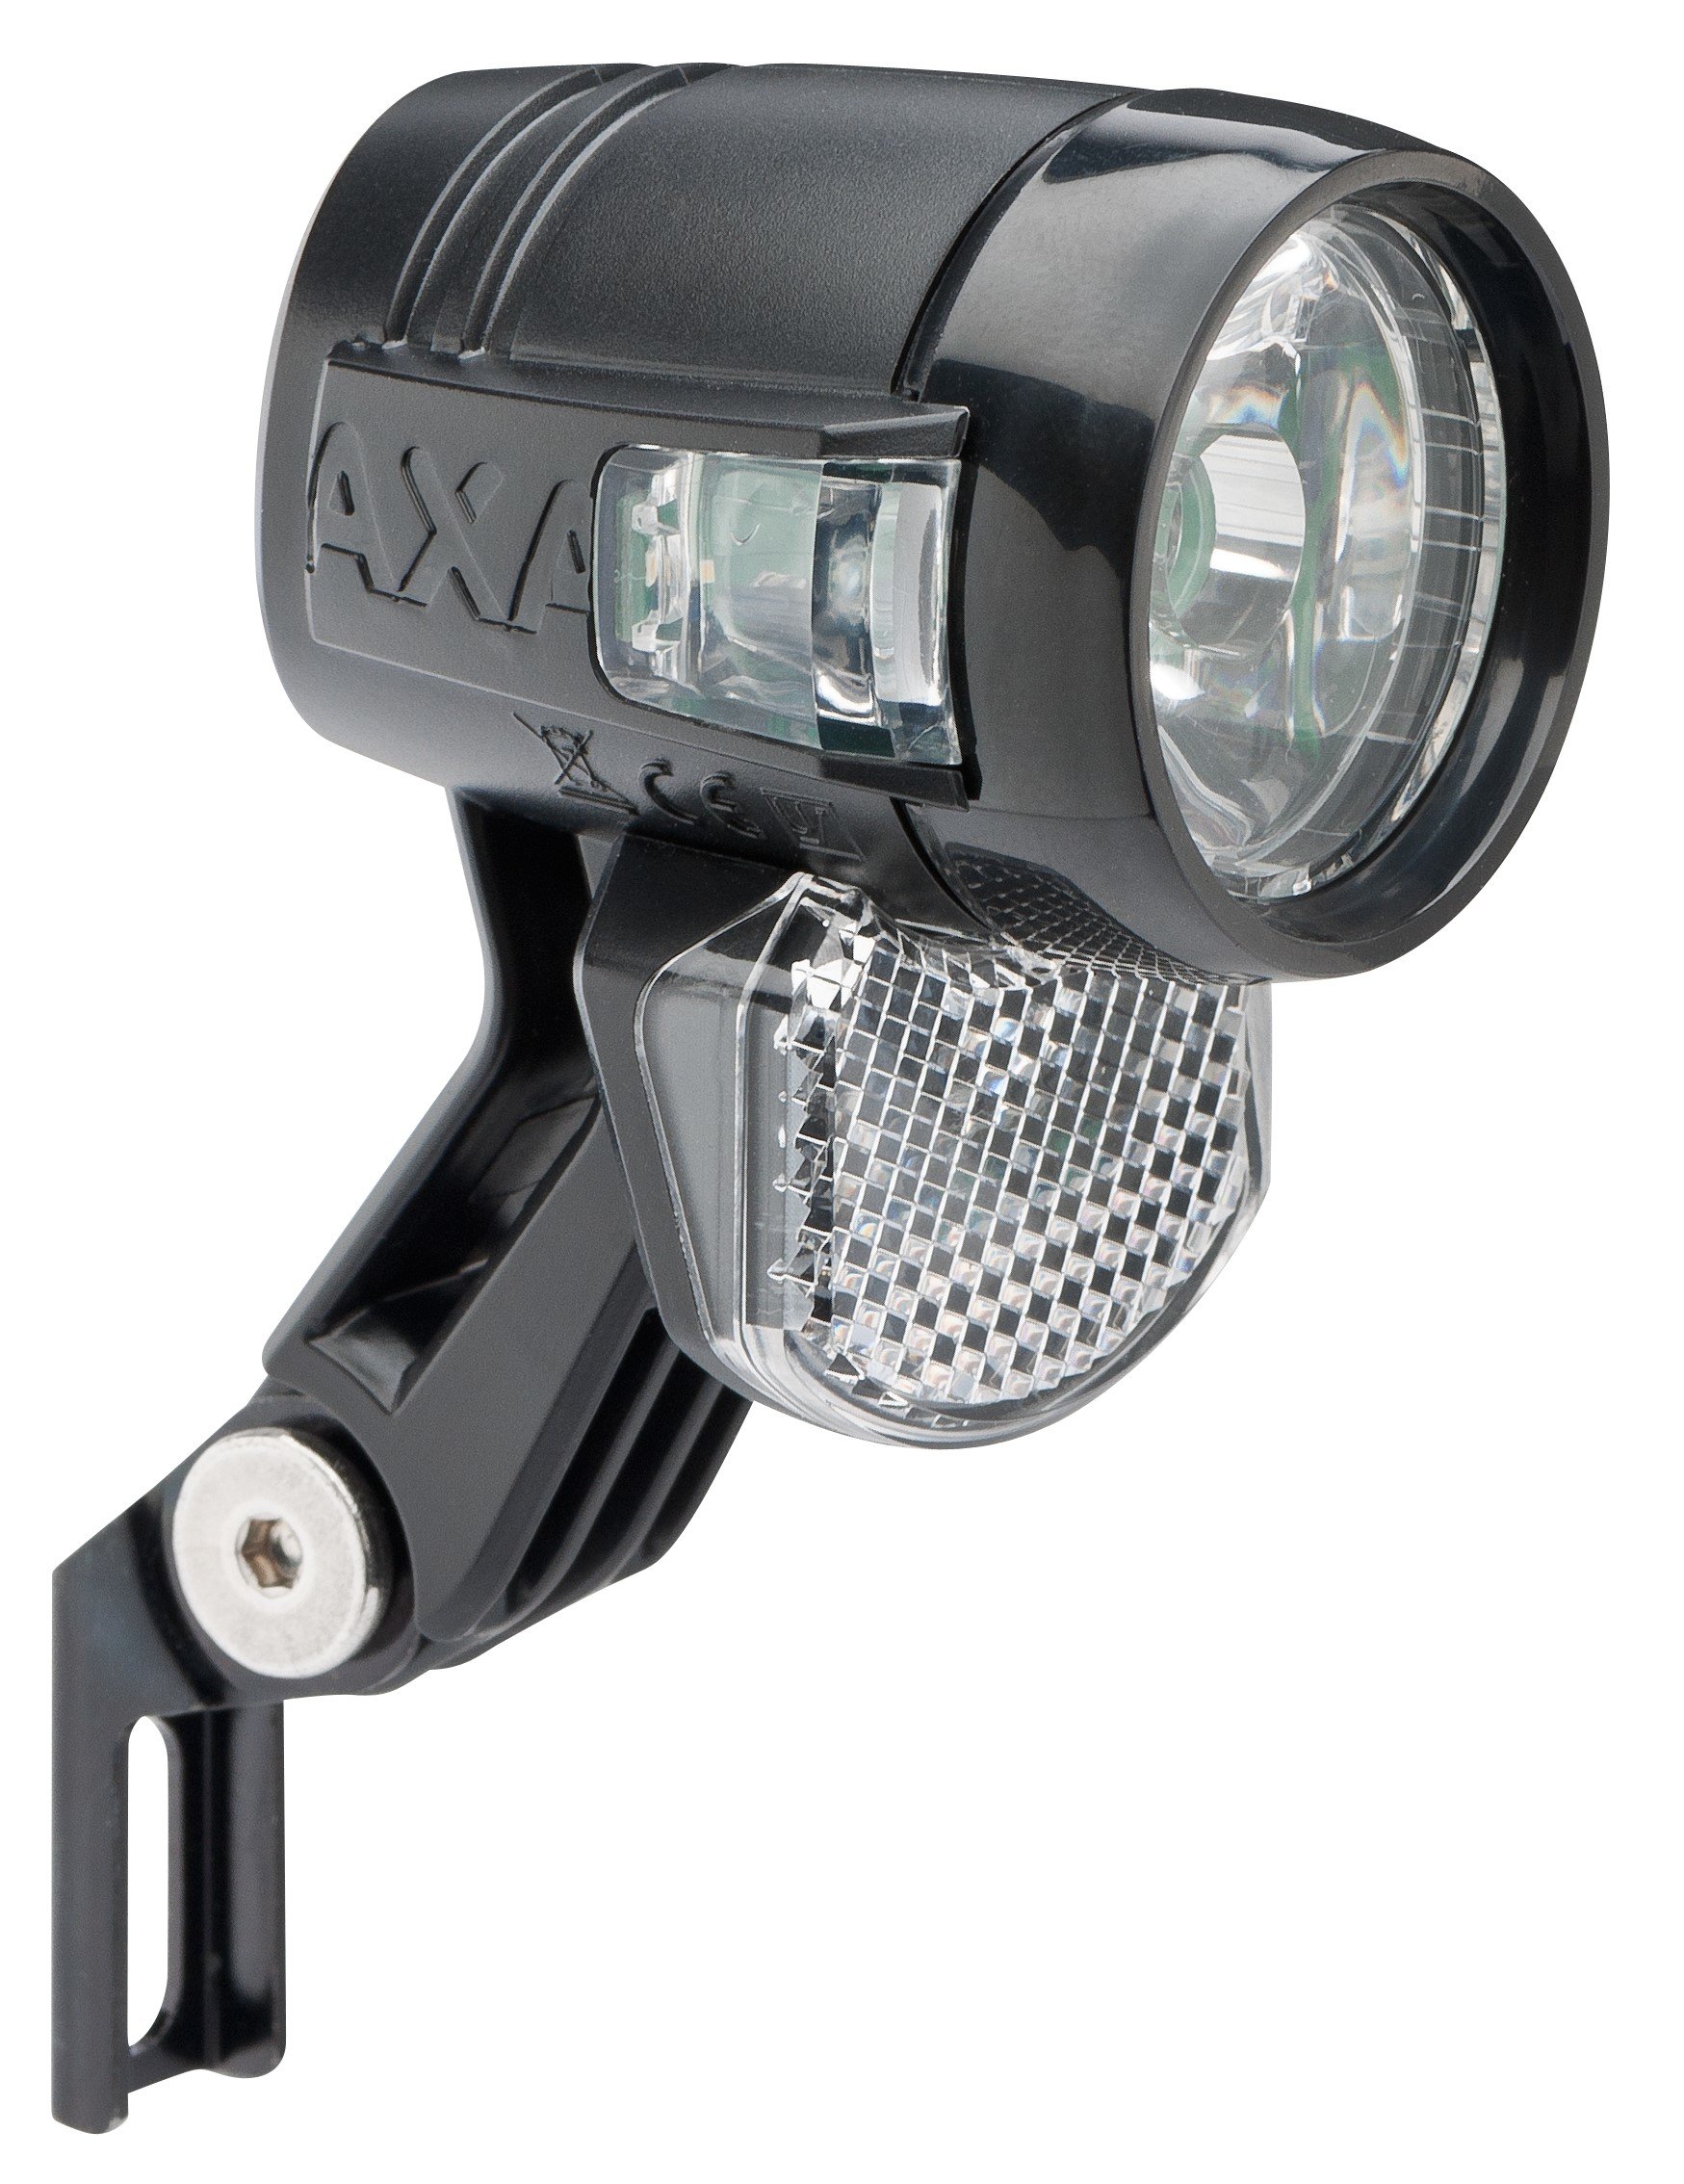 AXA przednia Blueline 30 Lampka rowerowa - niskie ceny i opinie w Media  Expert